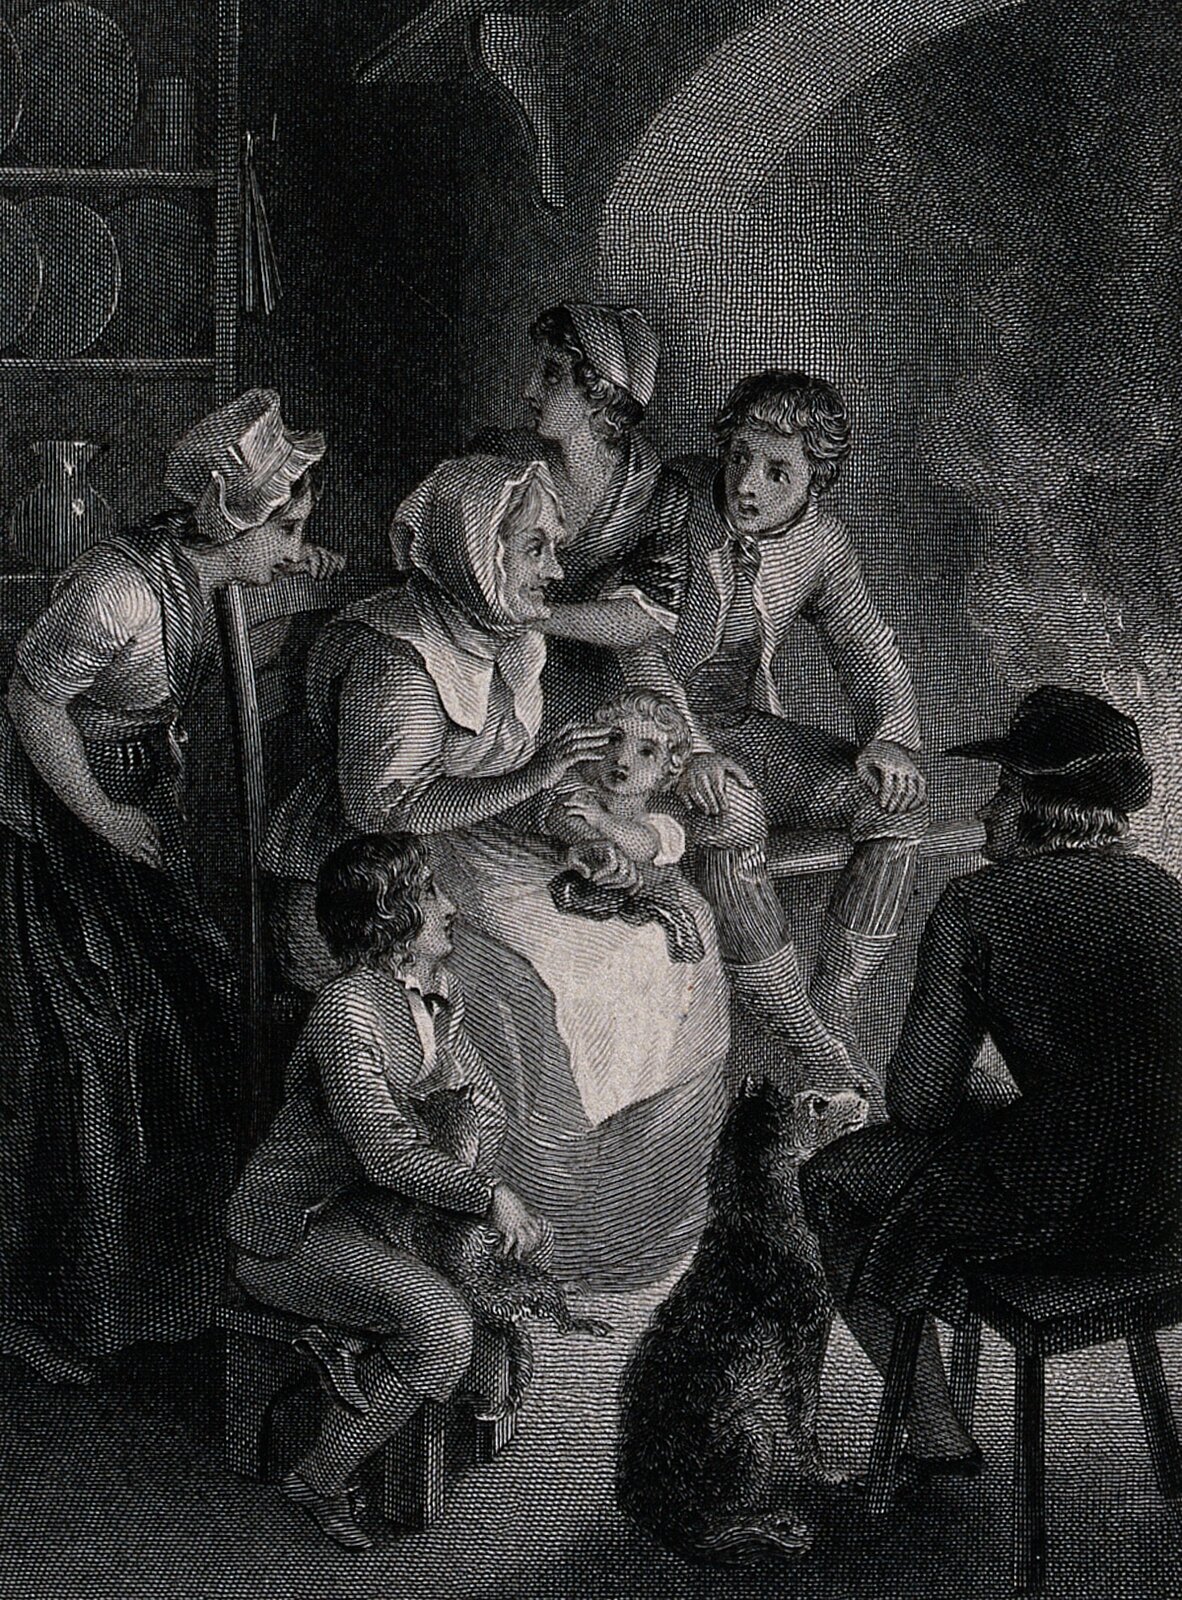 Czarno-biała ilustracja przedstawia grupkę pięciorga dzieci, ubranych w stroje z XVIII wieku - dwie młode panny mają na sobie długie suknie z krótkim rękawem, chustki na ramionach  i czepki, dwaj chłopcy  maja na sobie sięgające kolan spodnie, pończochy i trzewiki, koszule i marynarki. Najmłodsze dziecko, opierające się o kolana siedzącej na krześle kobiety, ma jasne, krótkie kręcone włosy i koszulę. Dzieci skupione są wokół siedzącej na krześle starszej kobiety w długiej sukni, fartuchu i chustce na głowie, która opowiada im historię. Dzieci są zasłuchane (dziewczęta stoją za jej plecami, chłopcy siedzą po obu bokach, malec stoi). Chłopiec siedzący po lewej stornie trzyma na kolanach kota. Naprzeciw kobiety na niskim krzesełku siedzi mężczyzna w płaszczu i kapeluszu. Pomiędzy nimi znajduje się pies. W tle widać ścianę pomieszczenia - po prawej stronie jest półokrągłe sklepienie, a po lewej regał z trzema półkami, na których ustawiono talerze i dzbanek.